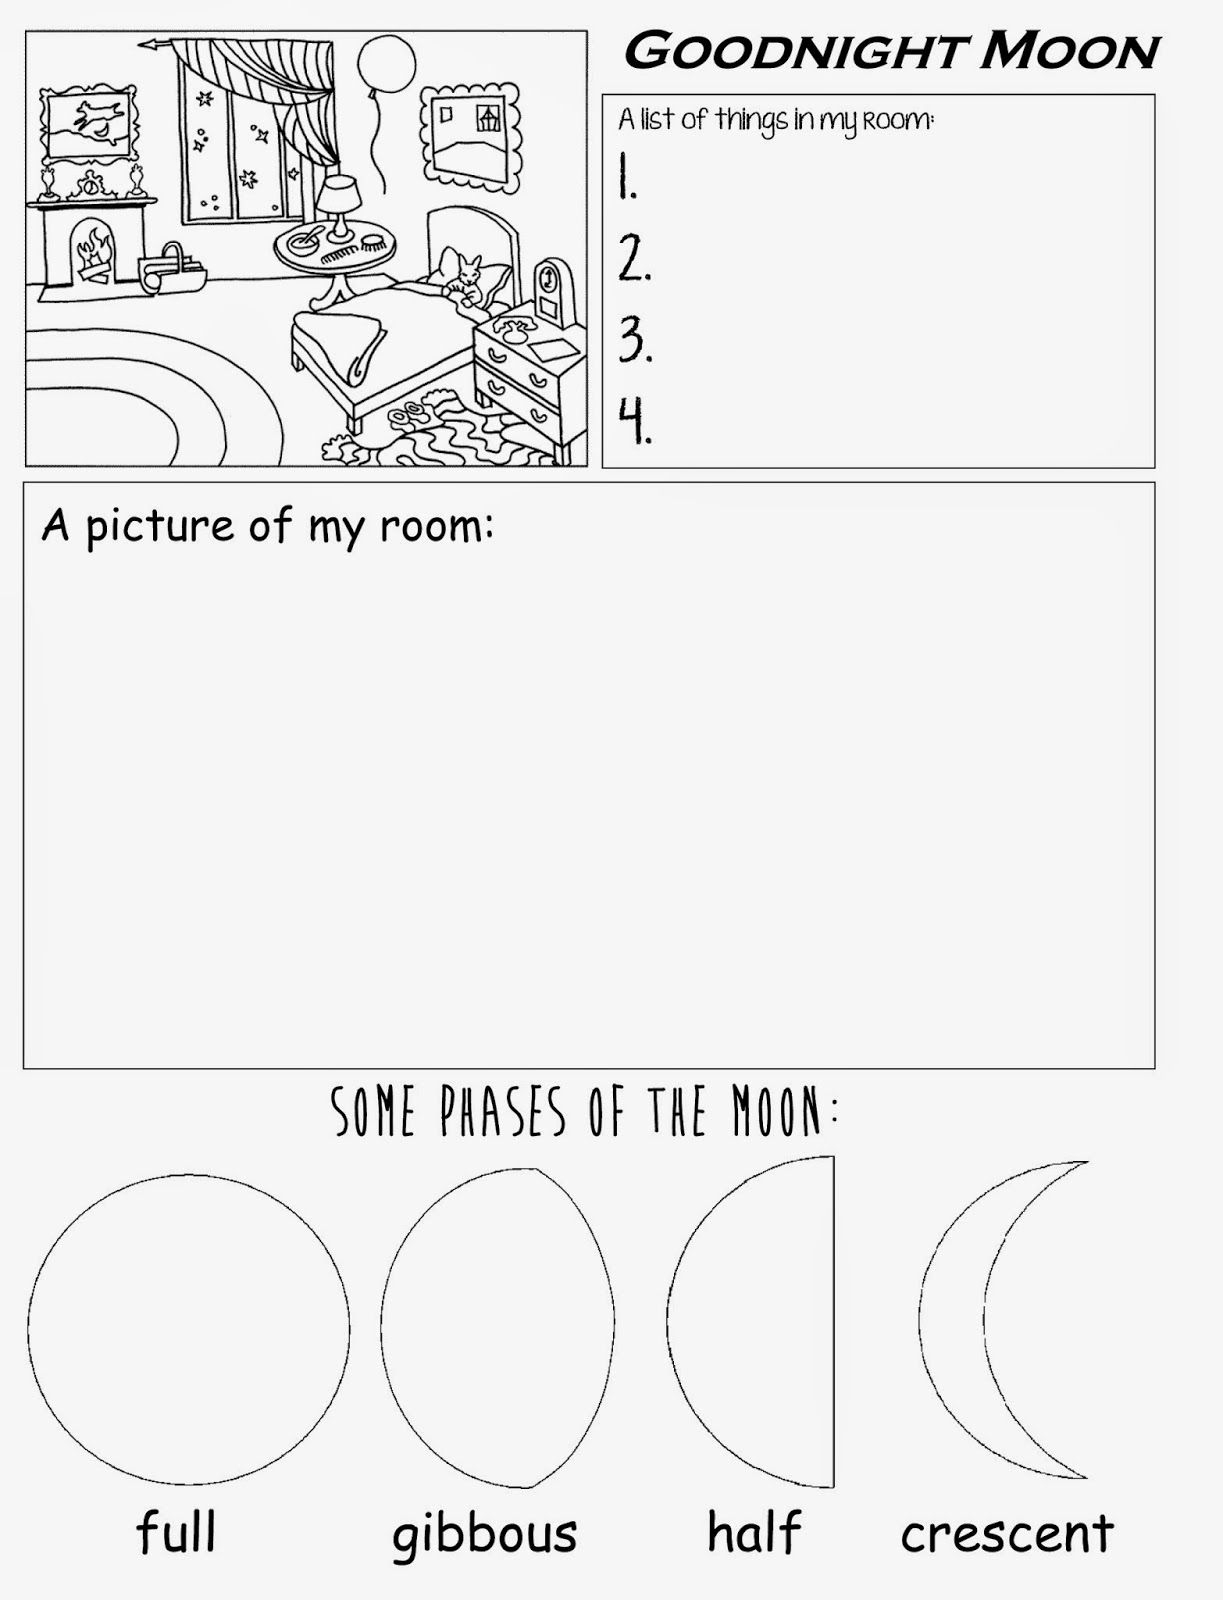 Goodnight Moon Free Printable Worksheet For Preschool Kindergarten | Free Printable Homework Worksheets